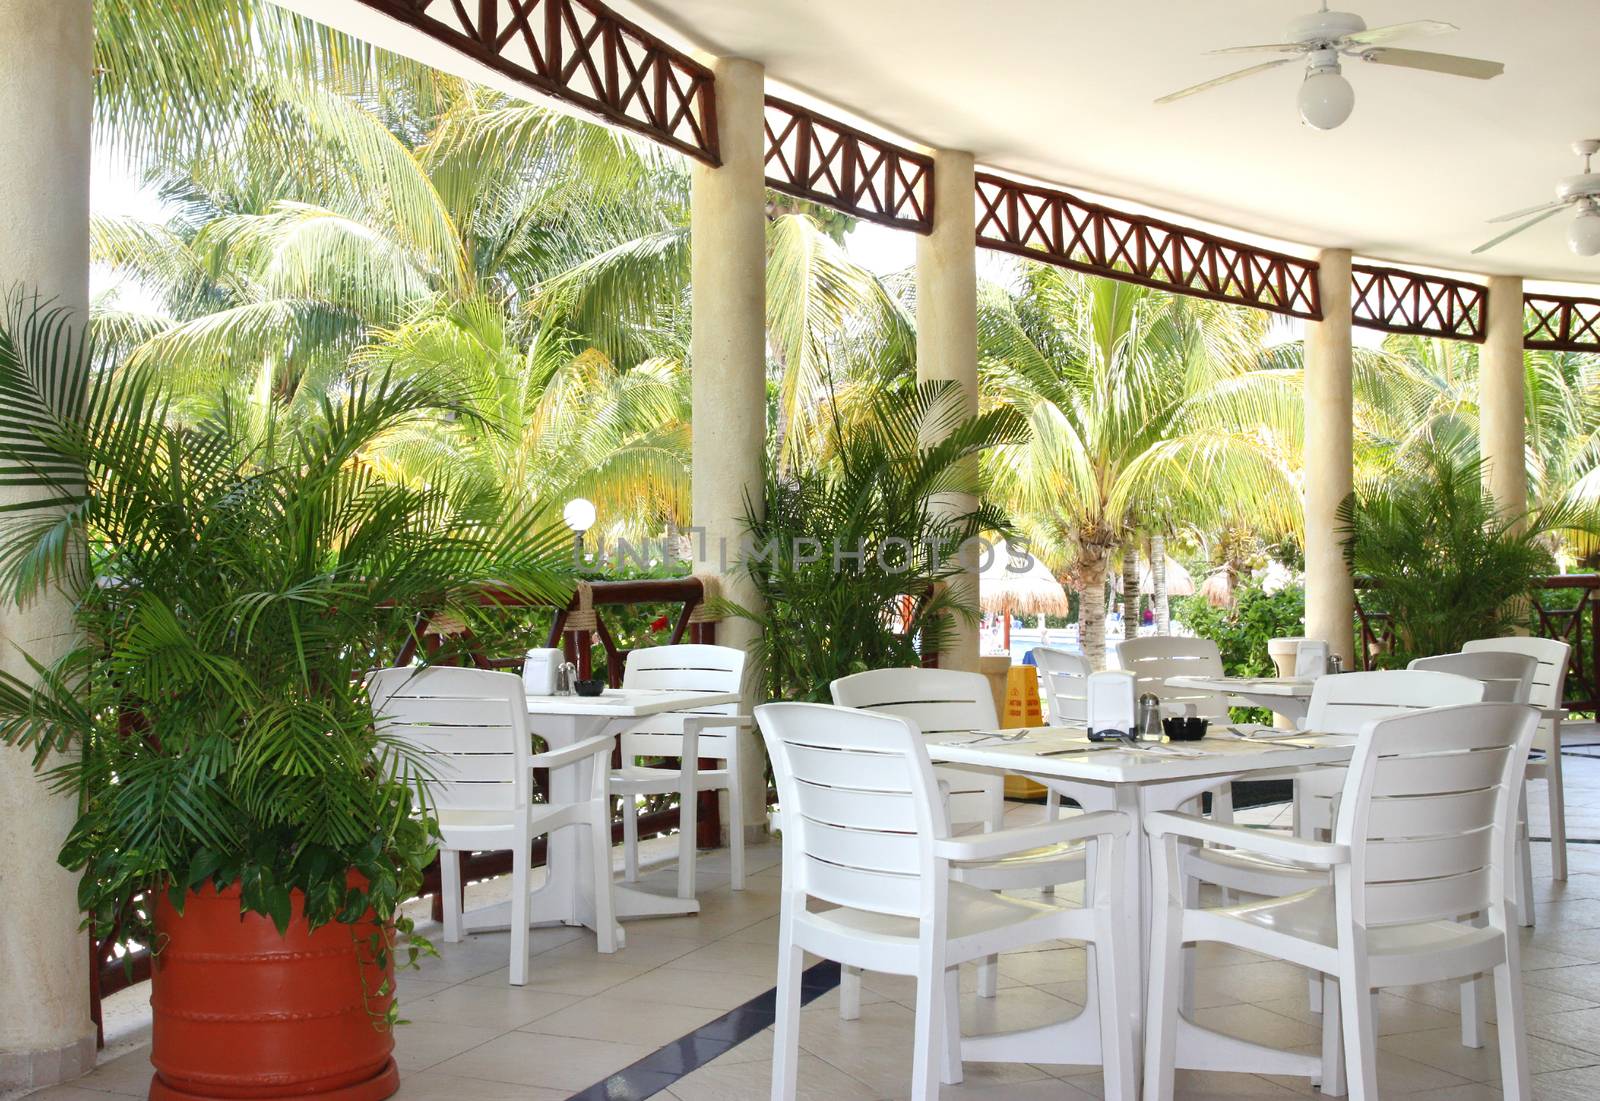 Outdoor cafe in tropical resort